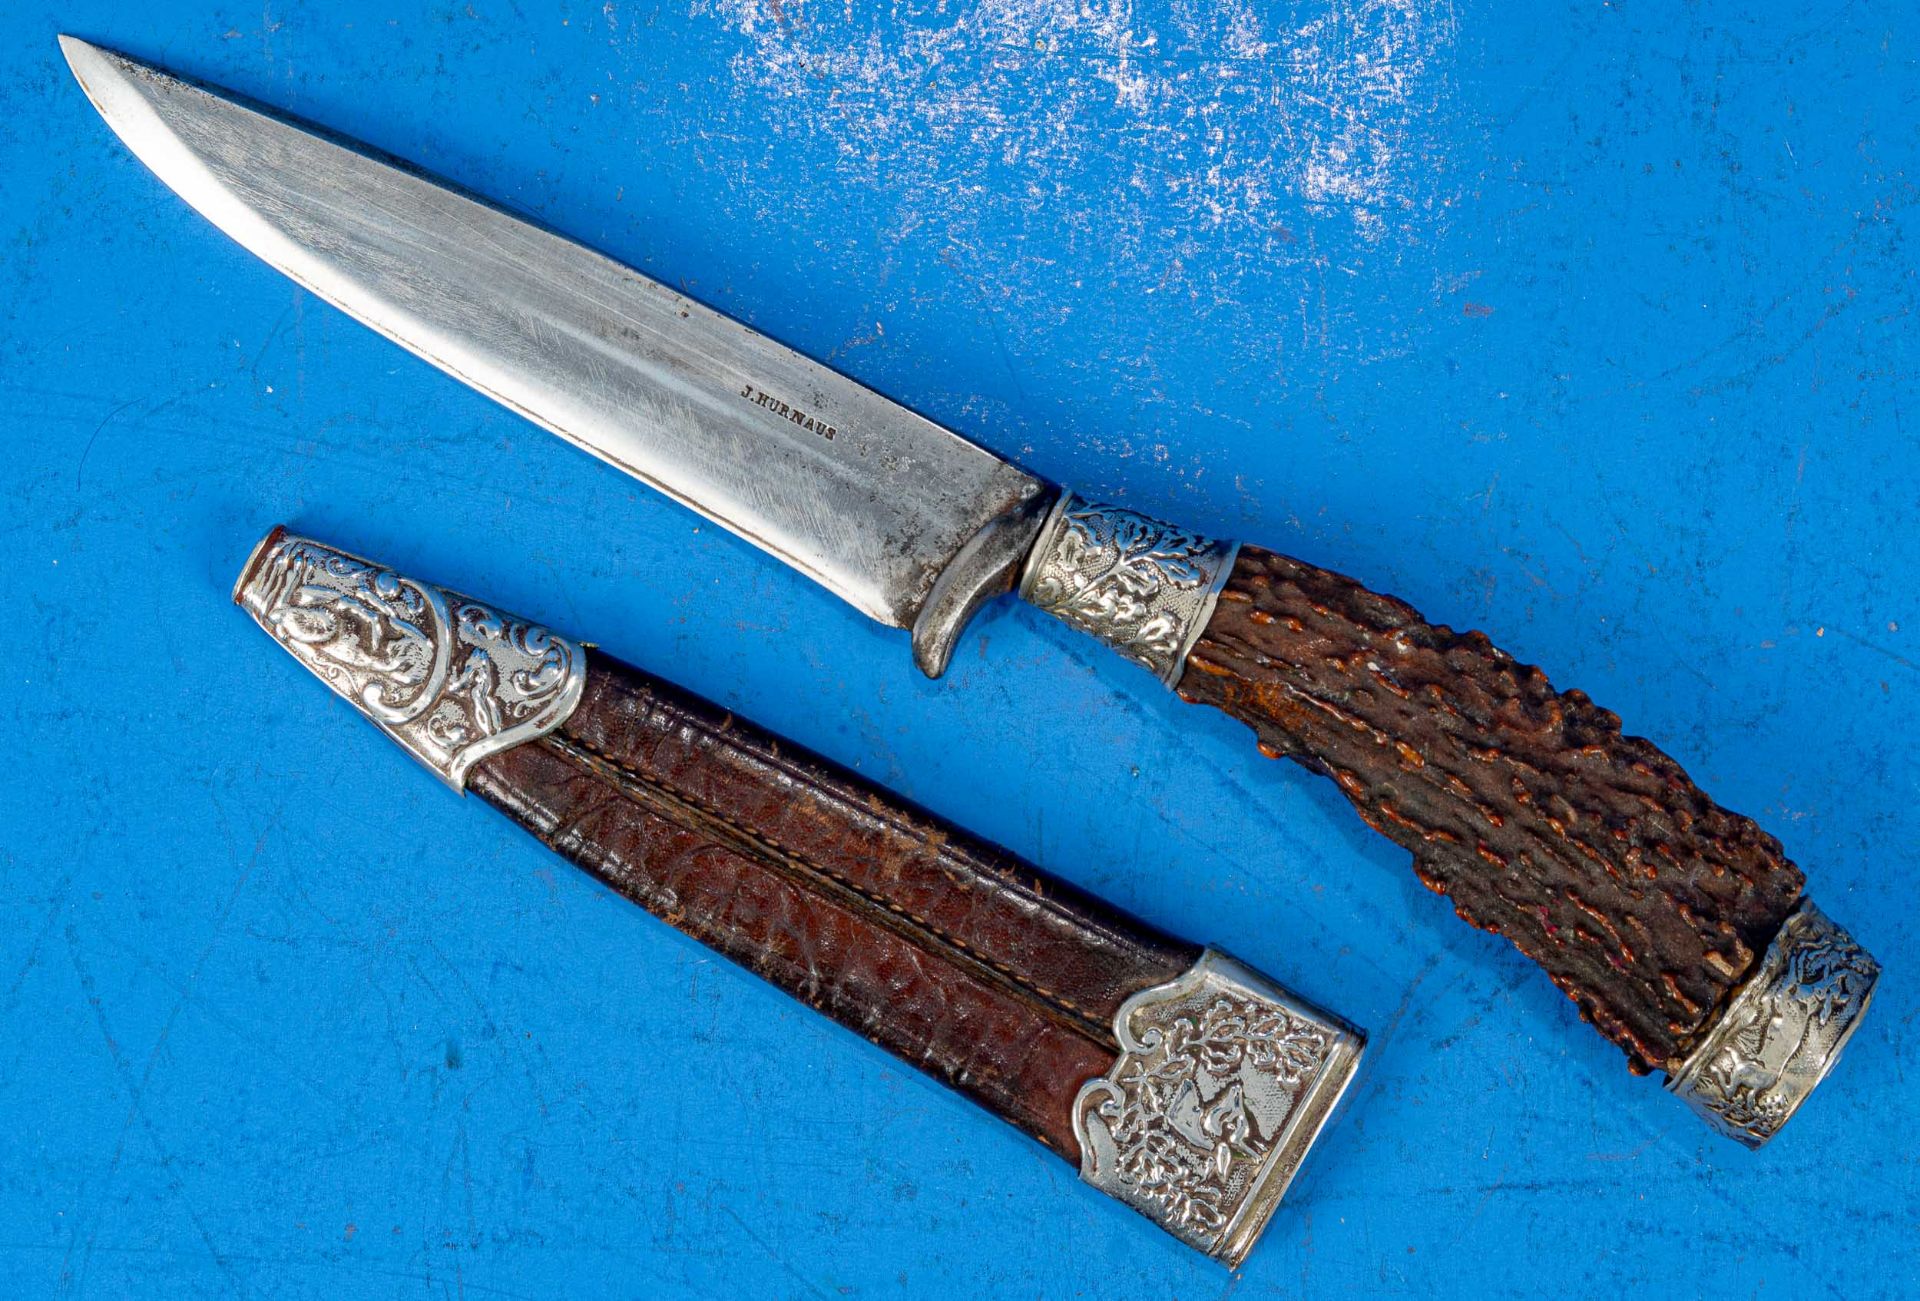 3tlg. Konvolut "Jagdliches", bestehend aus 2 kleinen Messern, Hirschhorngriffe in metallbeschlagene - Bild 4 aus 9